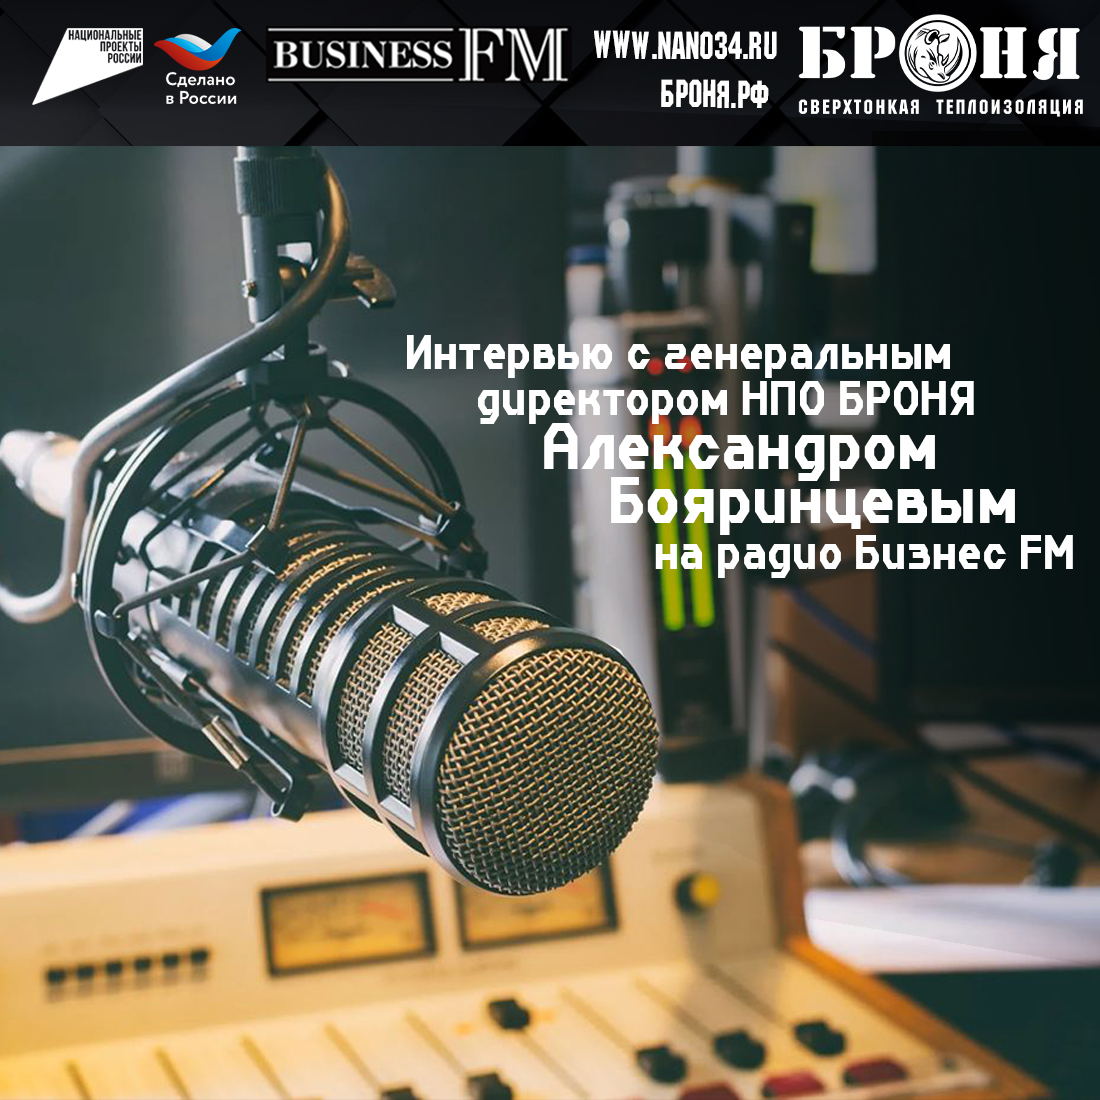 Интервью генерального директора Александра Бояринцева на деловой радиостанции России "Бизнес FM" (запись эфира)